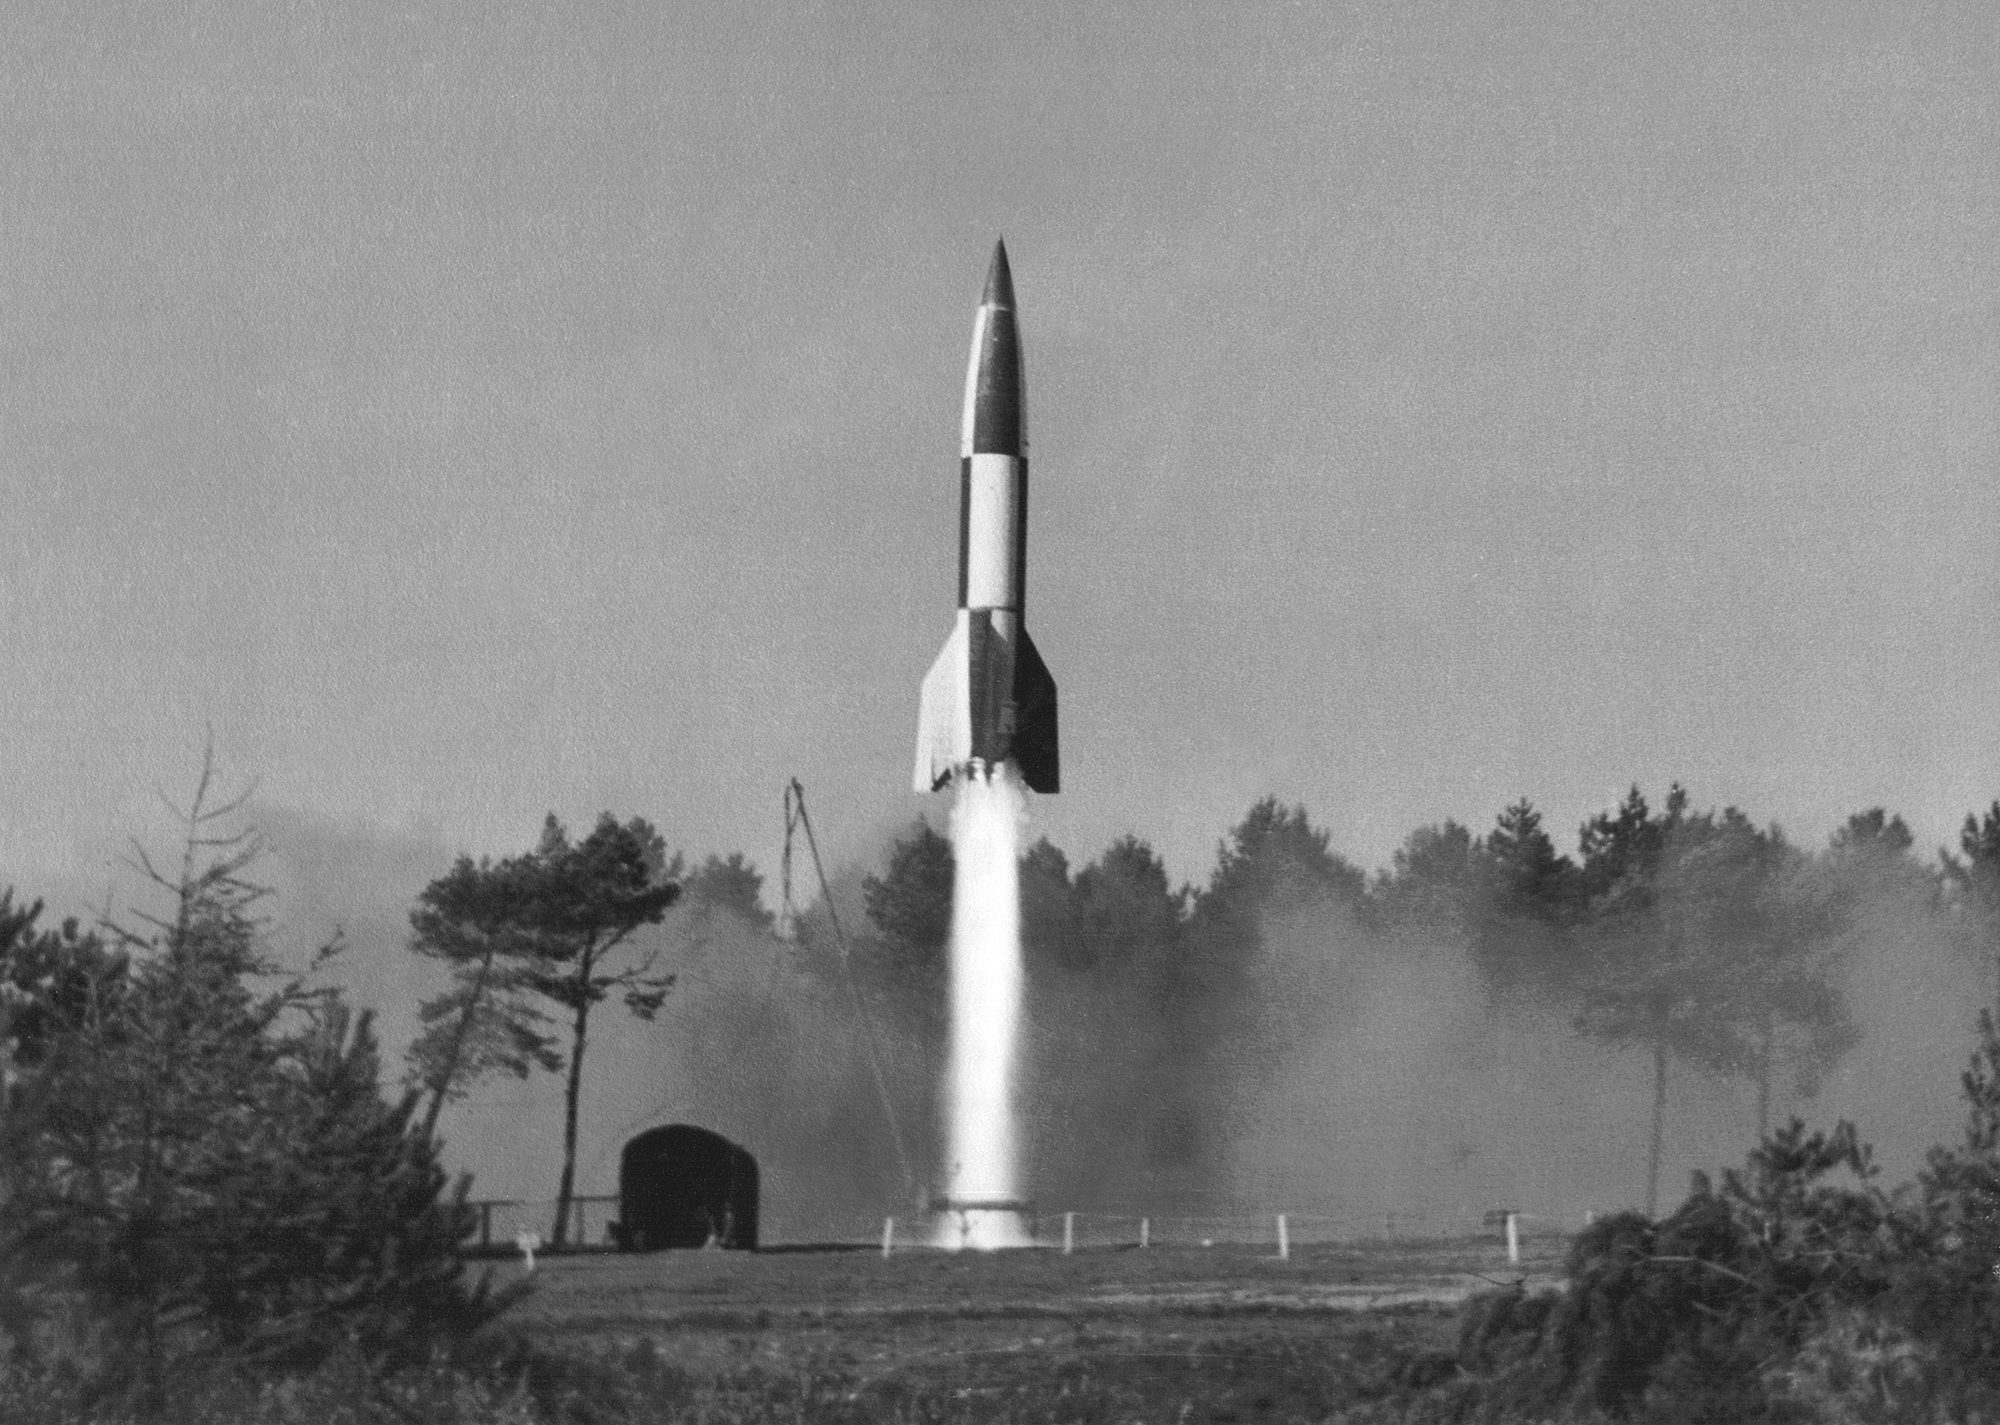 V2, la mère (nazie) des fusées modernes